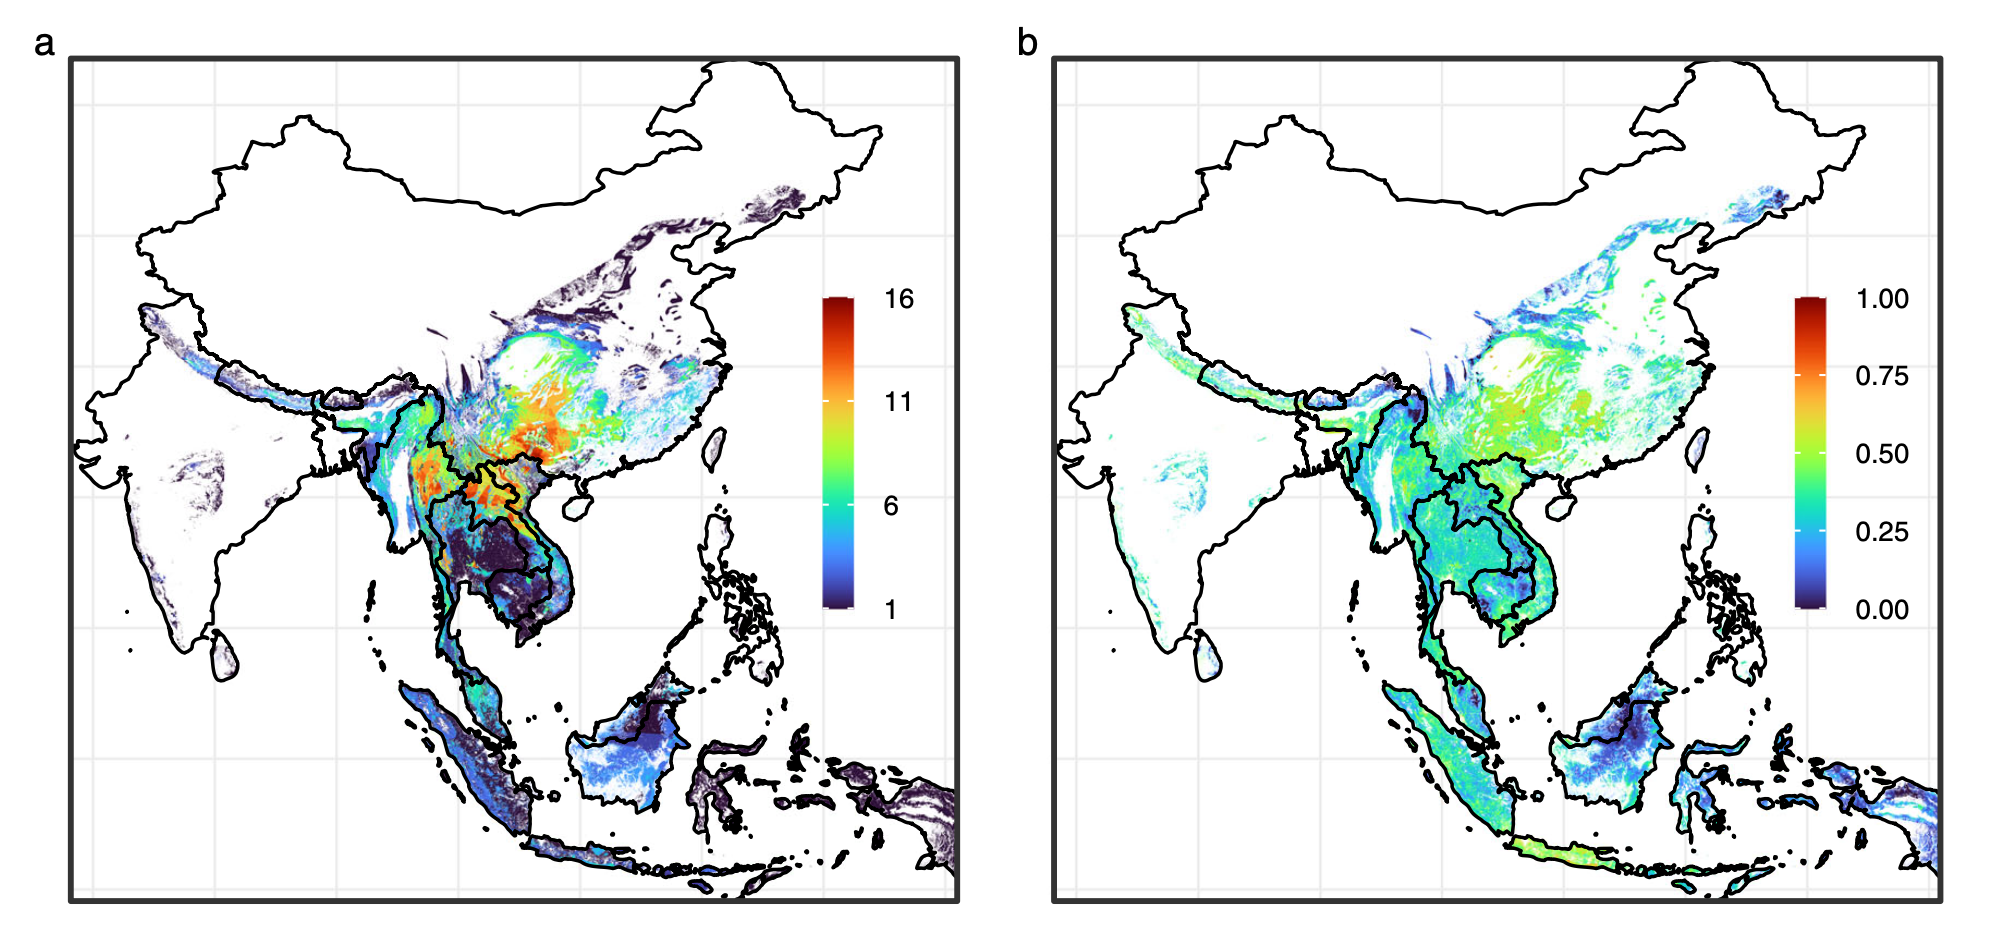 A SARS-rokon koronavírusokat hordozó denevérek fajgazdagsága (bal oldalon) és az emberi lakosságszámmal összevetett elterjedésük (jobb oldalon) Dél-Kelet-Ázsiában. A piros színek nagyobb fajgazdagságot, és emberek-denevérek közötti átfedésre utalnak.